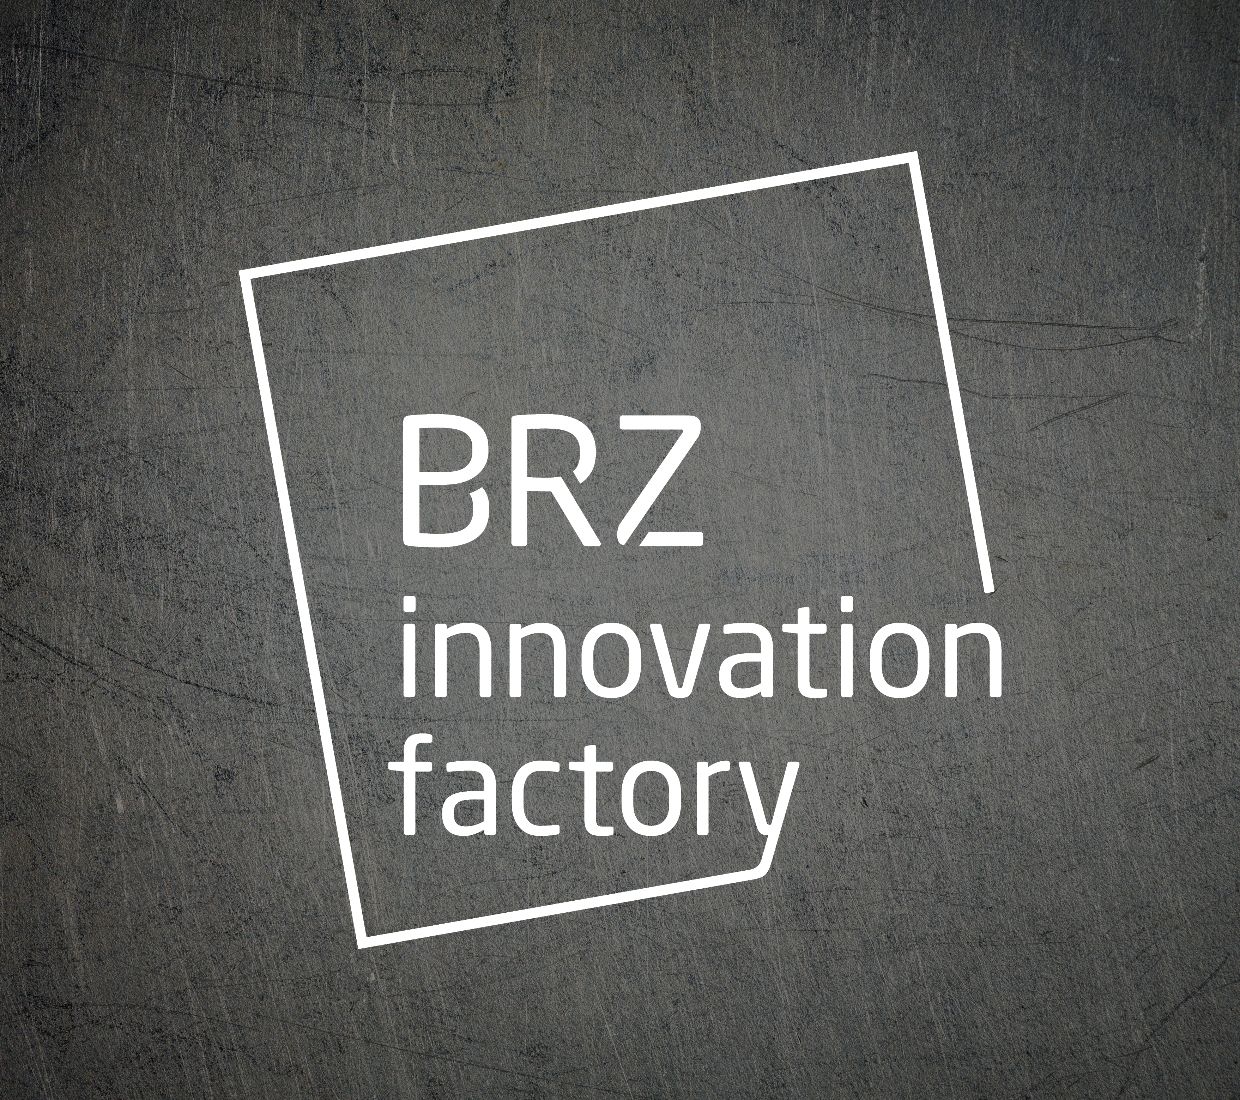 Logo von der BRZ Innovation Factory in weiß auf einem Metalltextur Hintergrund.